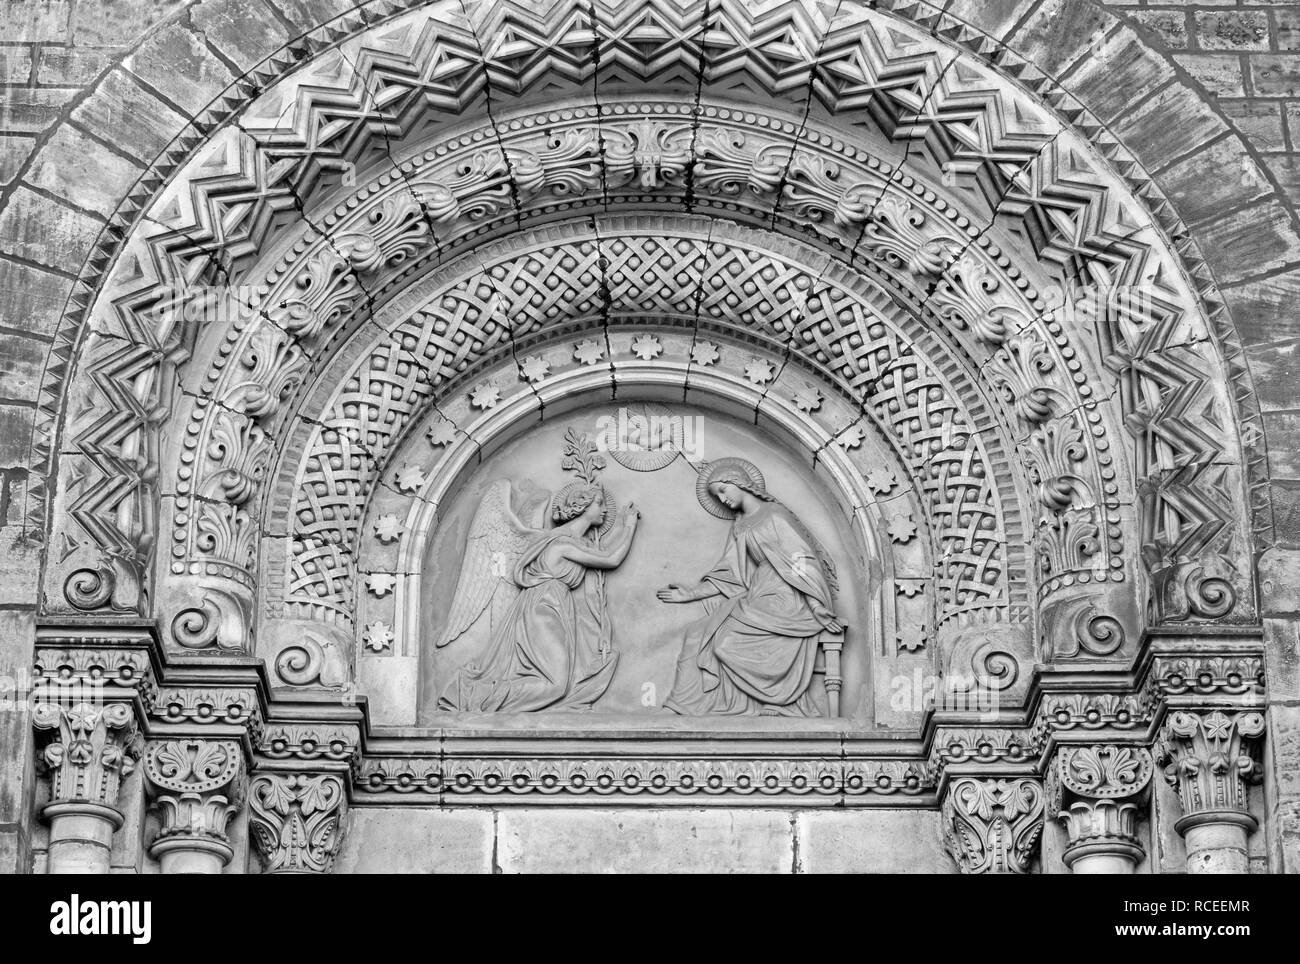 Praga, Repubblica Ceca - 17 ottobre 2018: il rilievo di annunciazione sul portale della chiesa kostel Svatého Cyrila Metodeje da Václav Levý Foto Stock